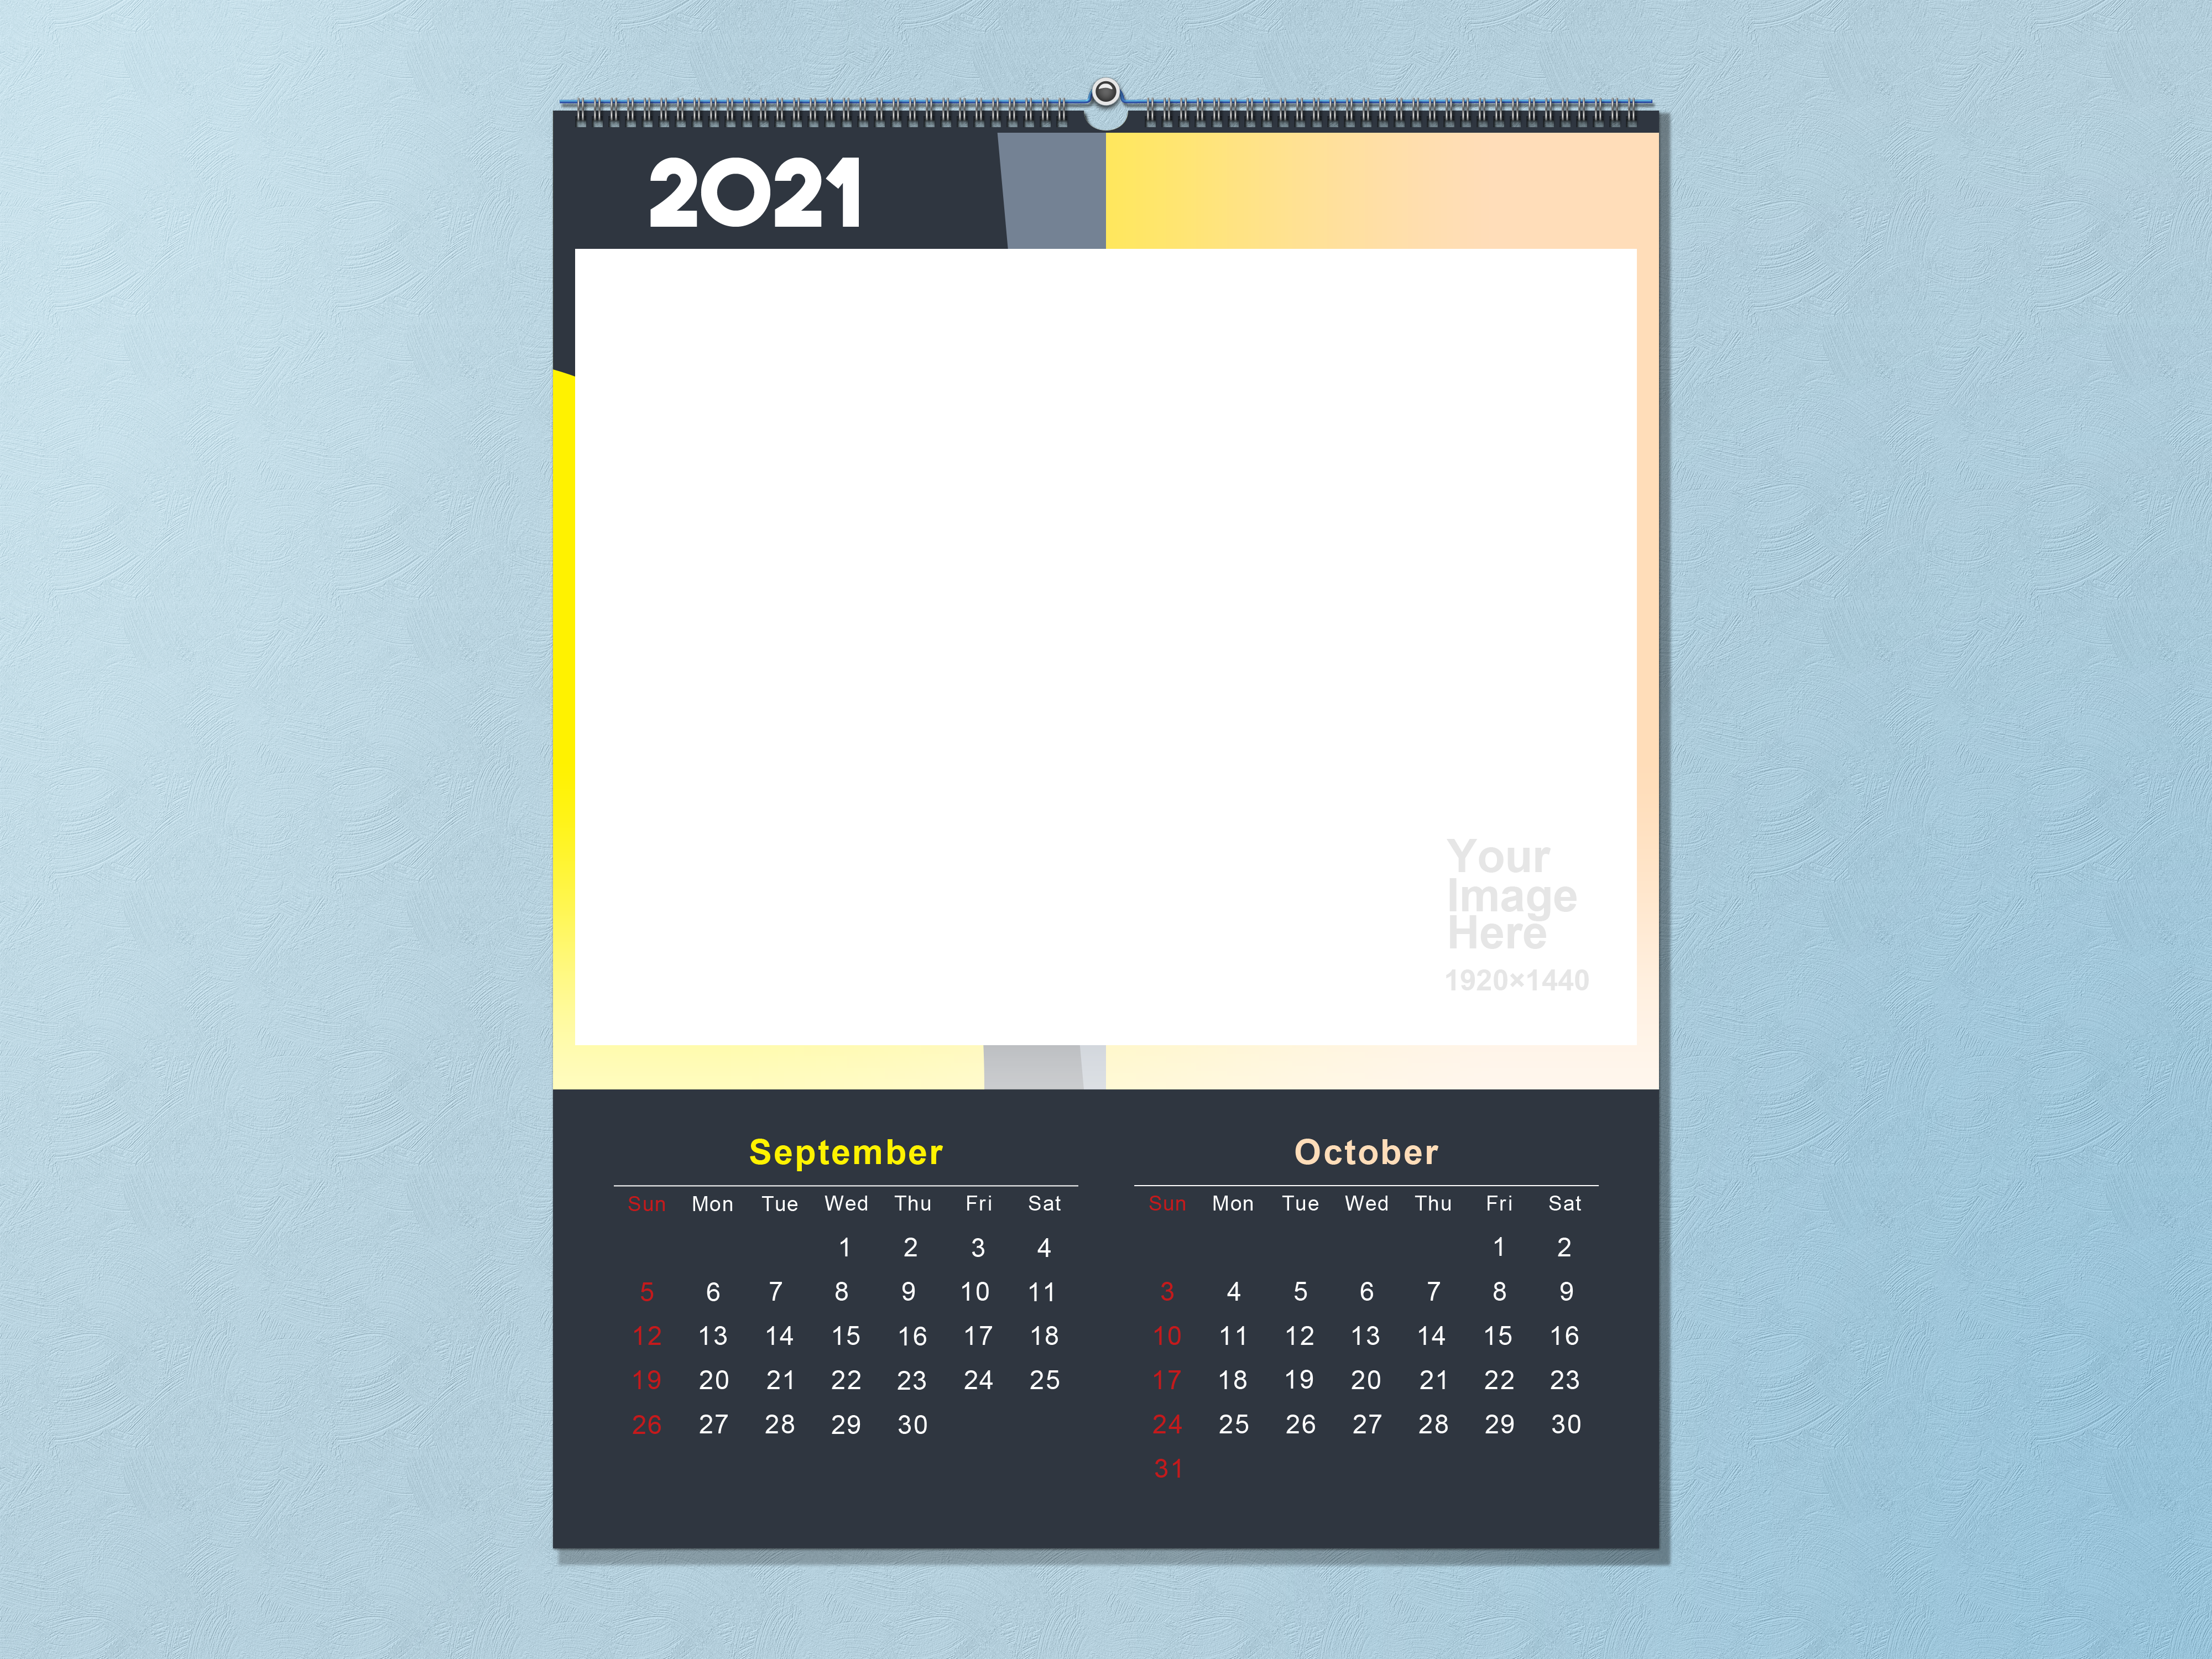 2021 Calendar Template September October 4000x3000